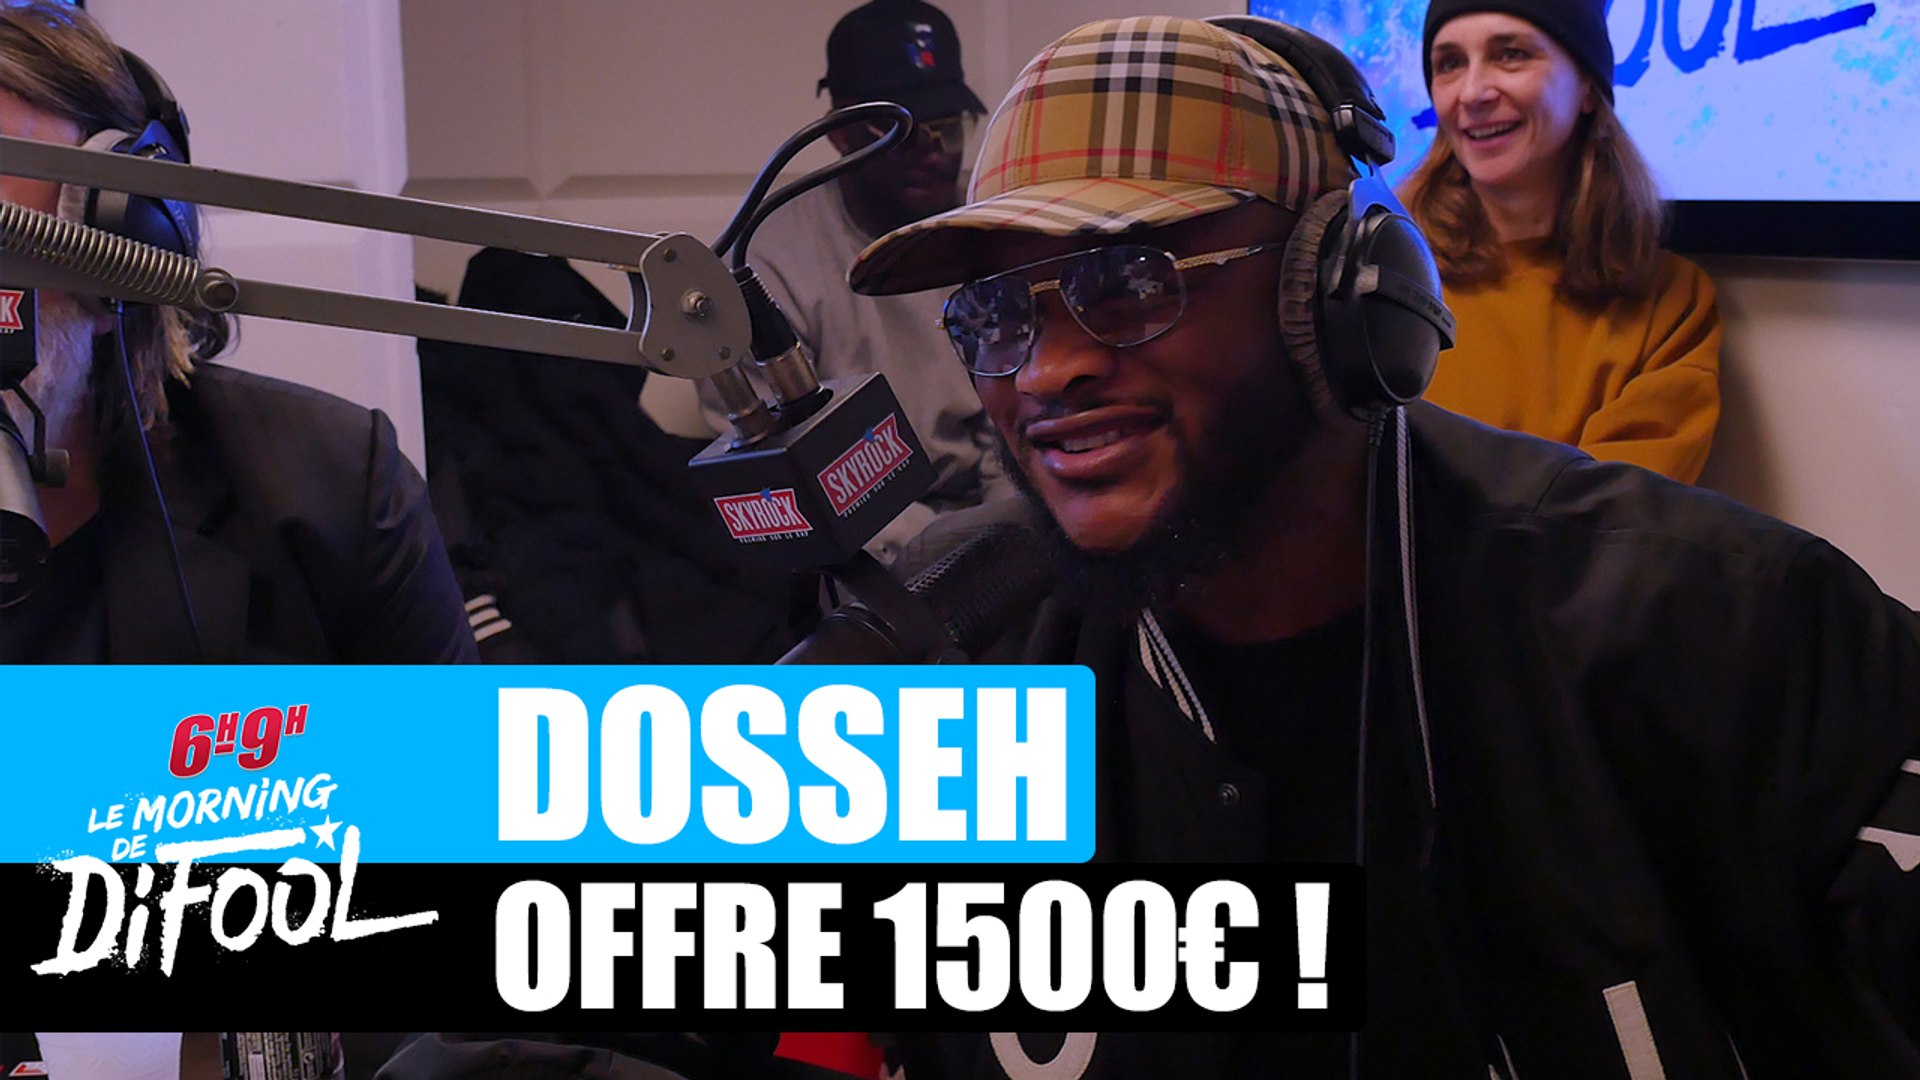 Dosseh offre 1500€ à un auditeur ! #MorningDeDifool - Vidéo Dailymotion